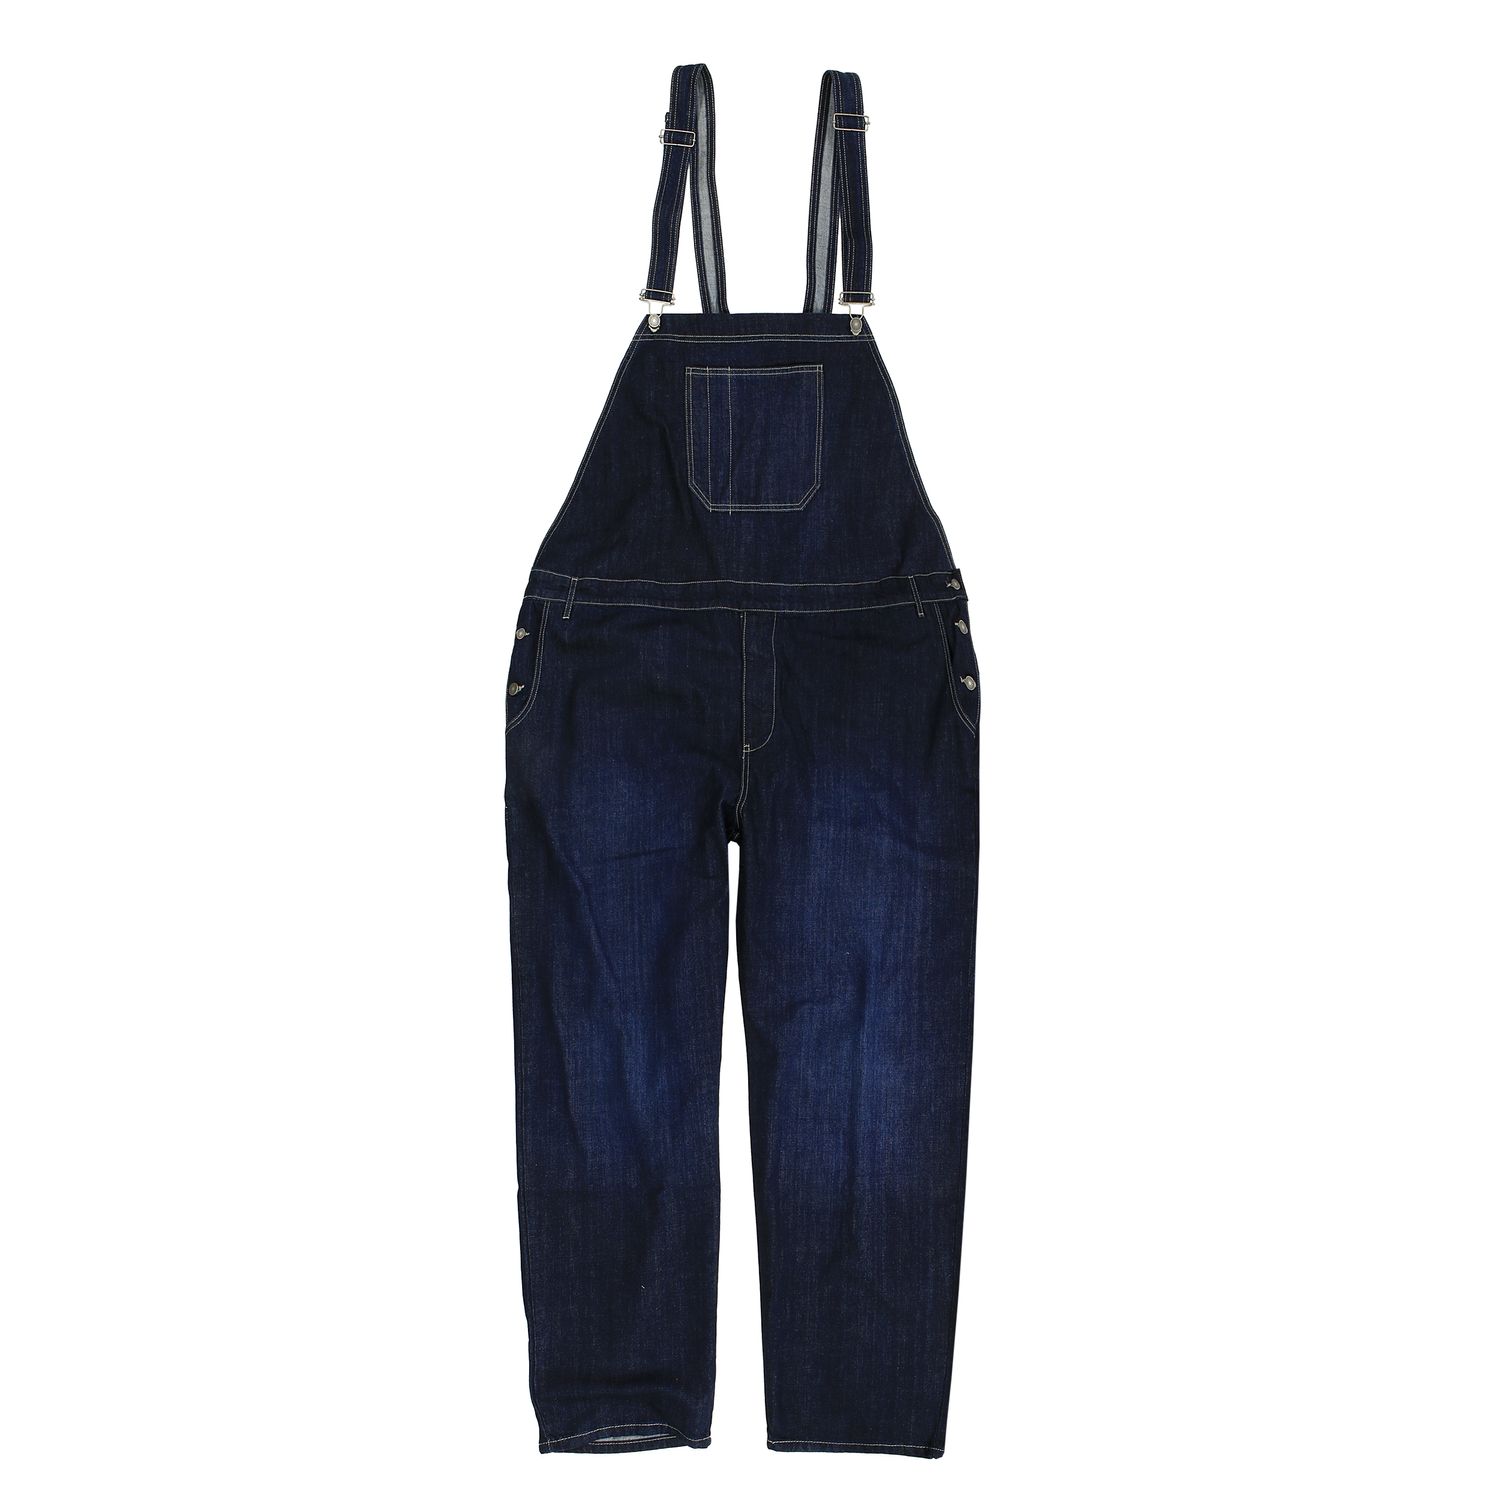 Salopette en jean by Abraxas en grandes tailles jusqu'au 12XL - bleu foncé 